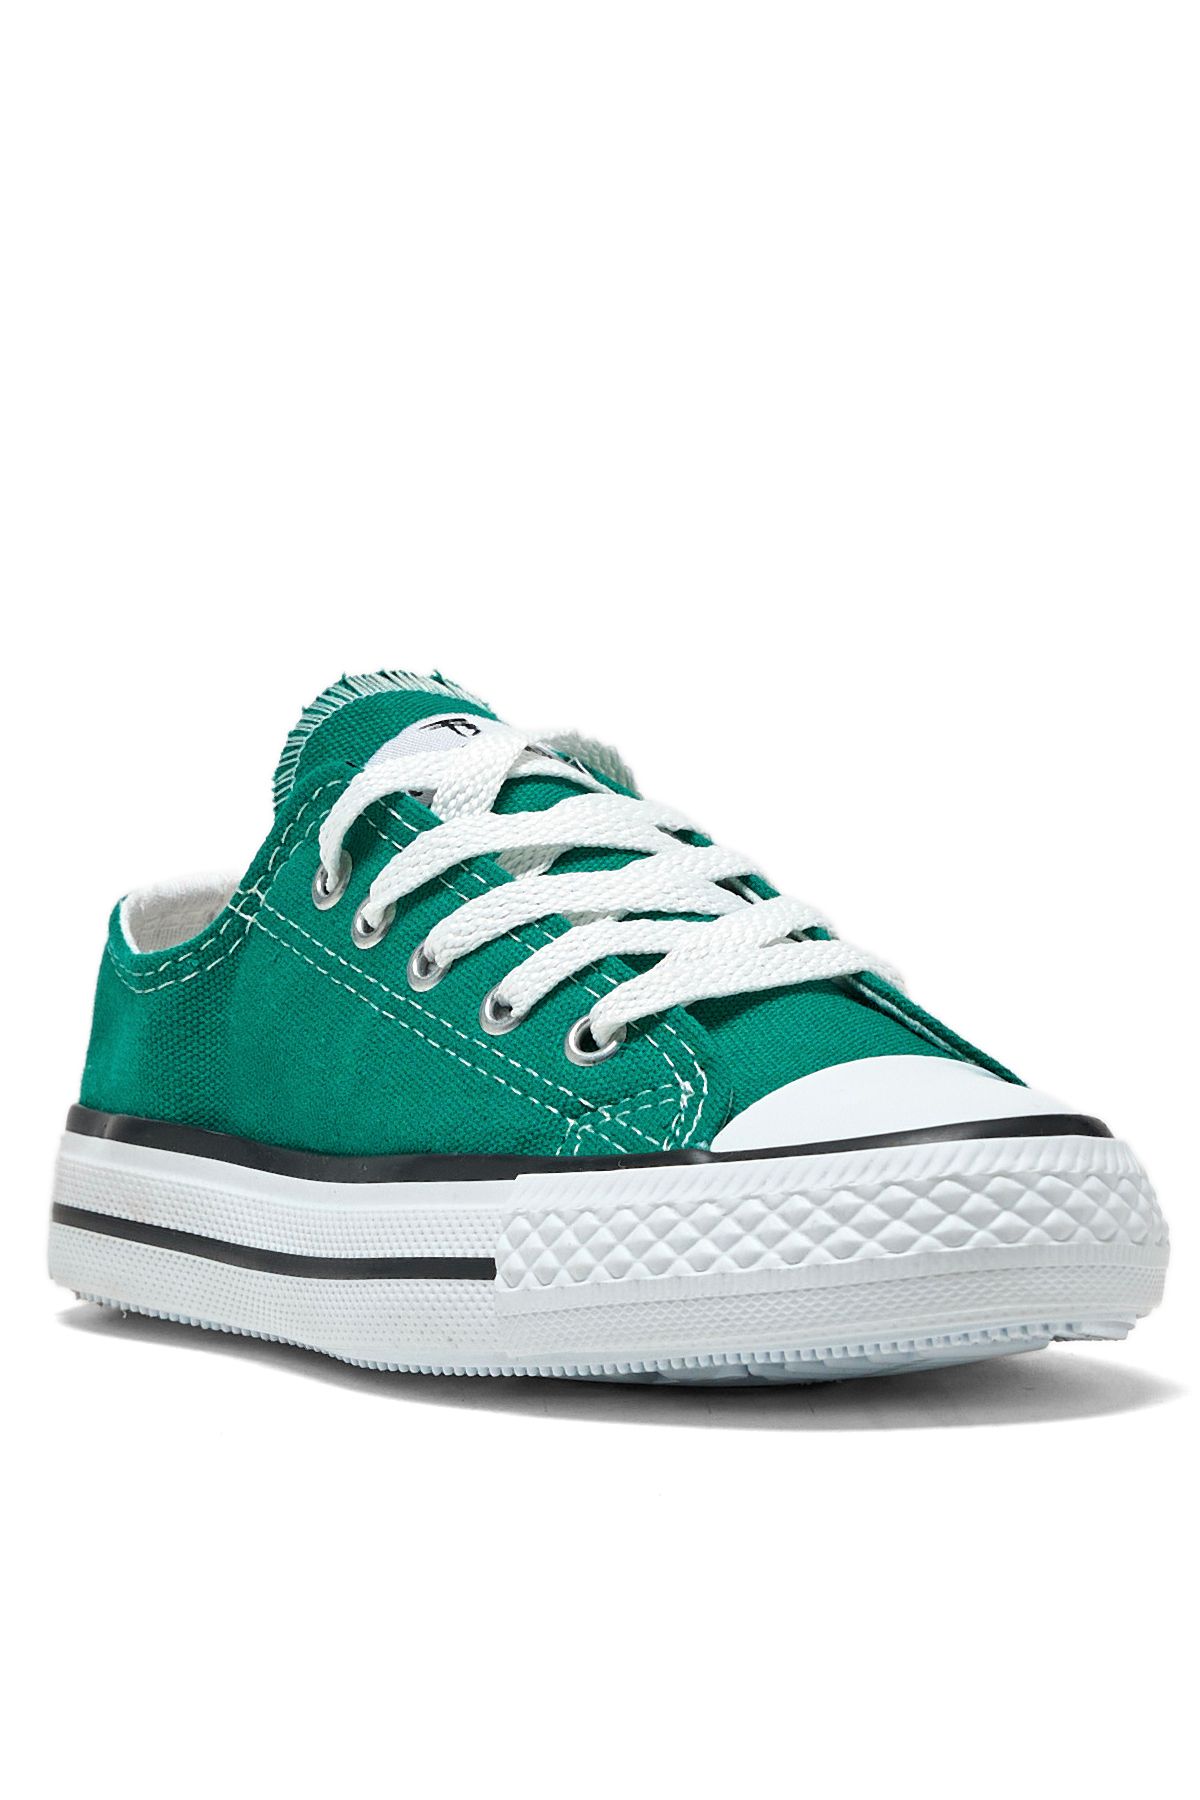 Tonny Black Çocuk Unisex Yeşil Rahat Kalip Sneaker Ayakkabı